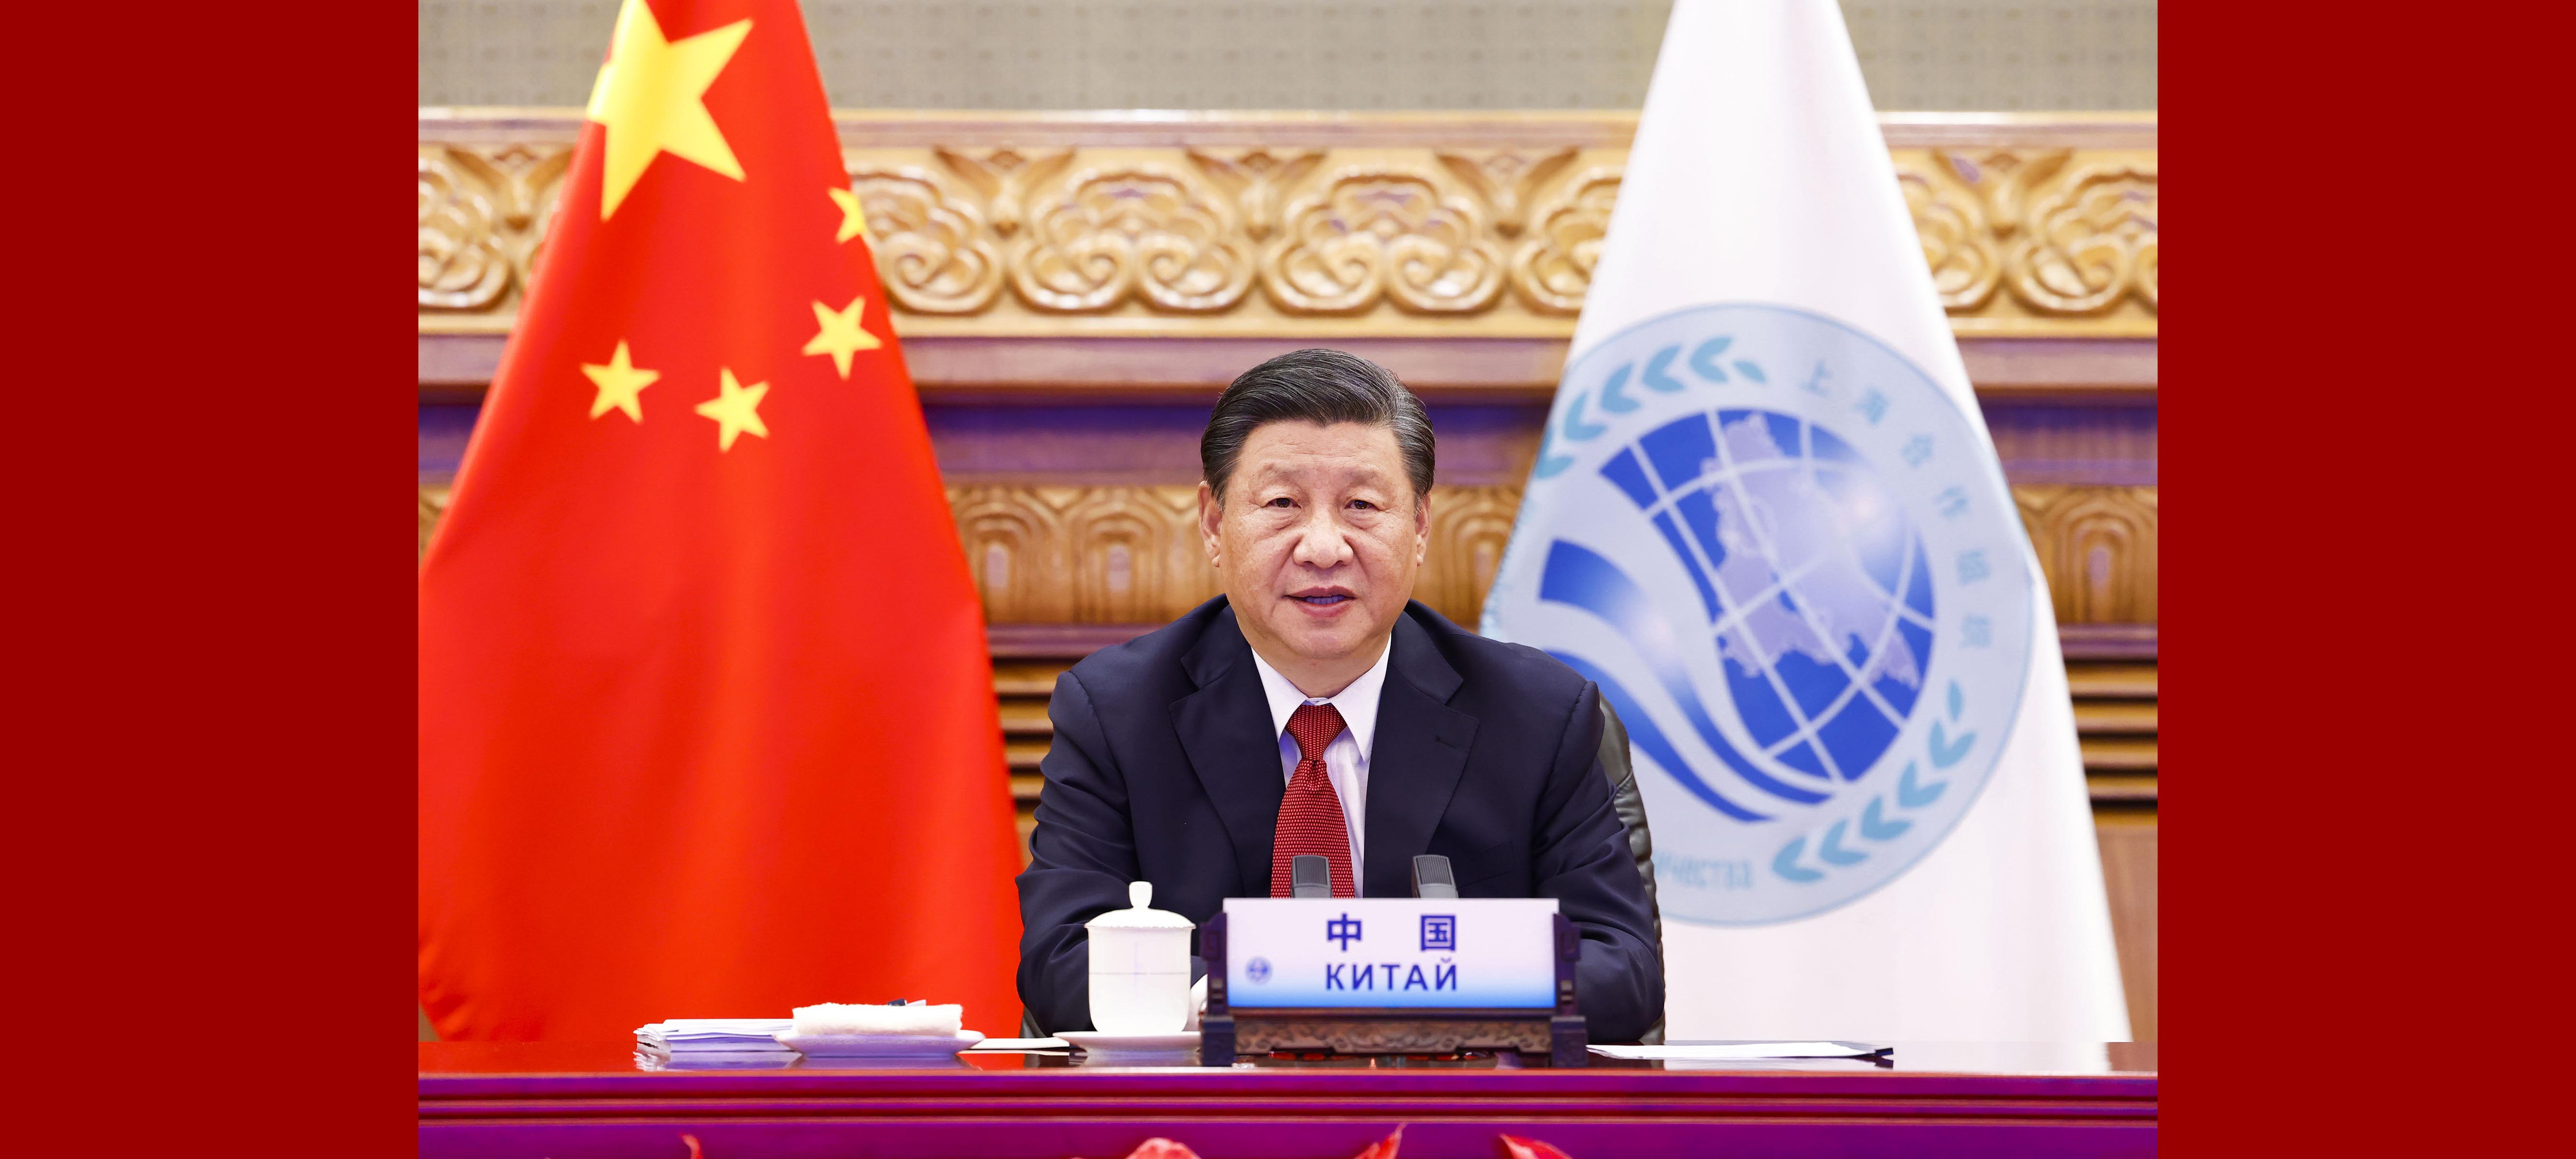 Xi discursa à reunião da OCS por videoconferência